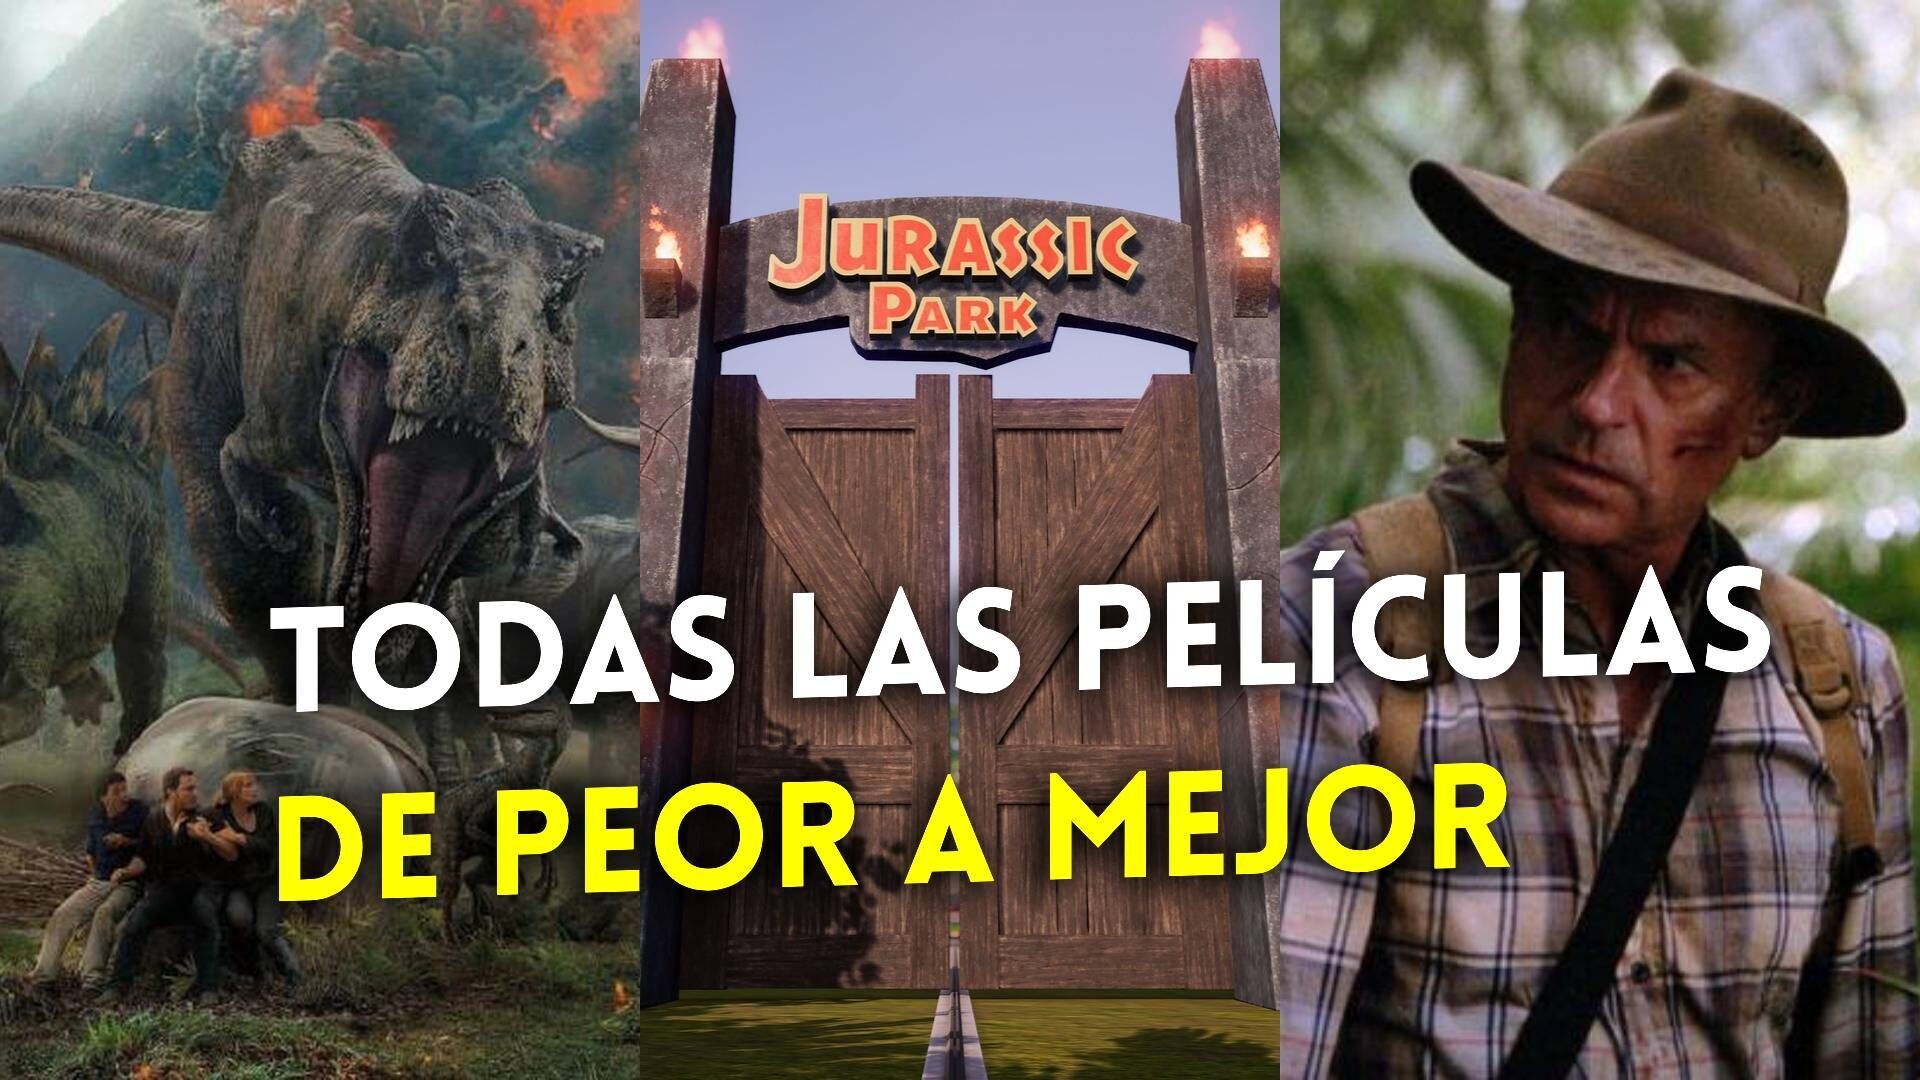 Cuál es la mejor película de Jurassic Park y Jurassic World? - TOP